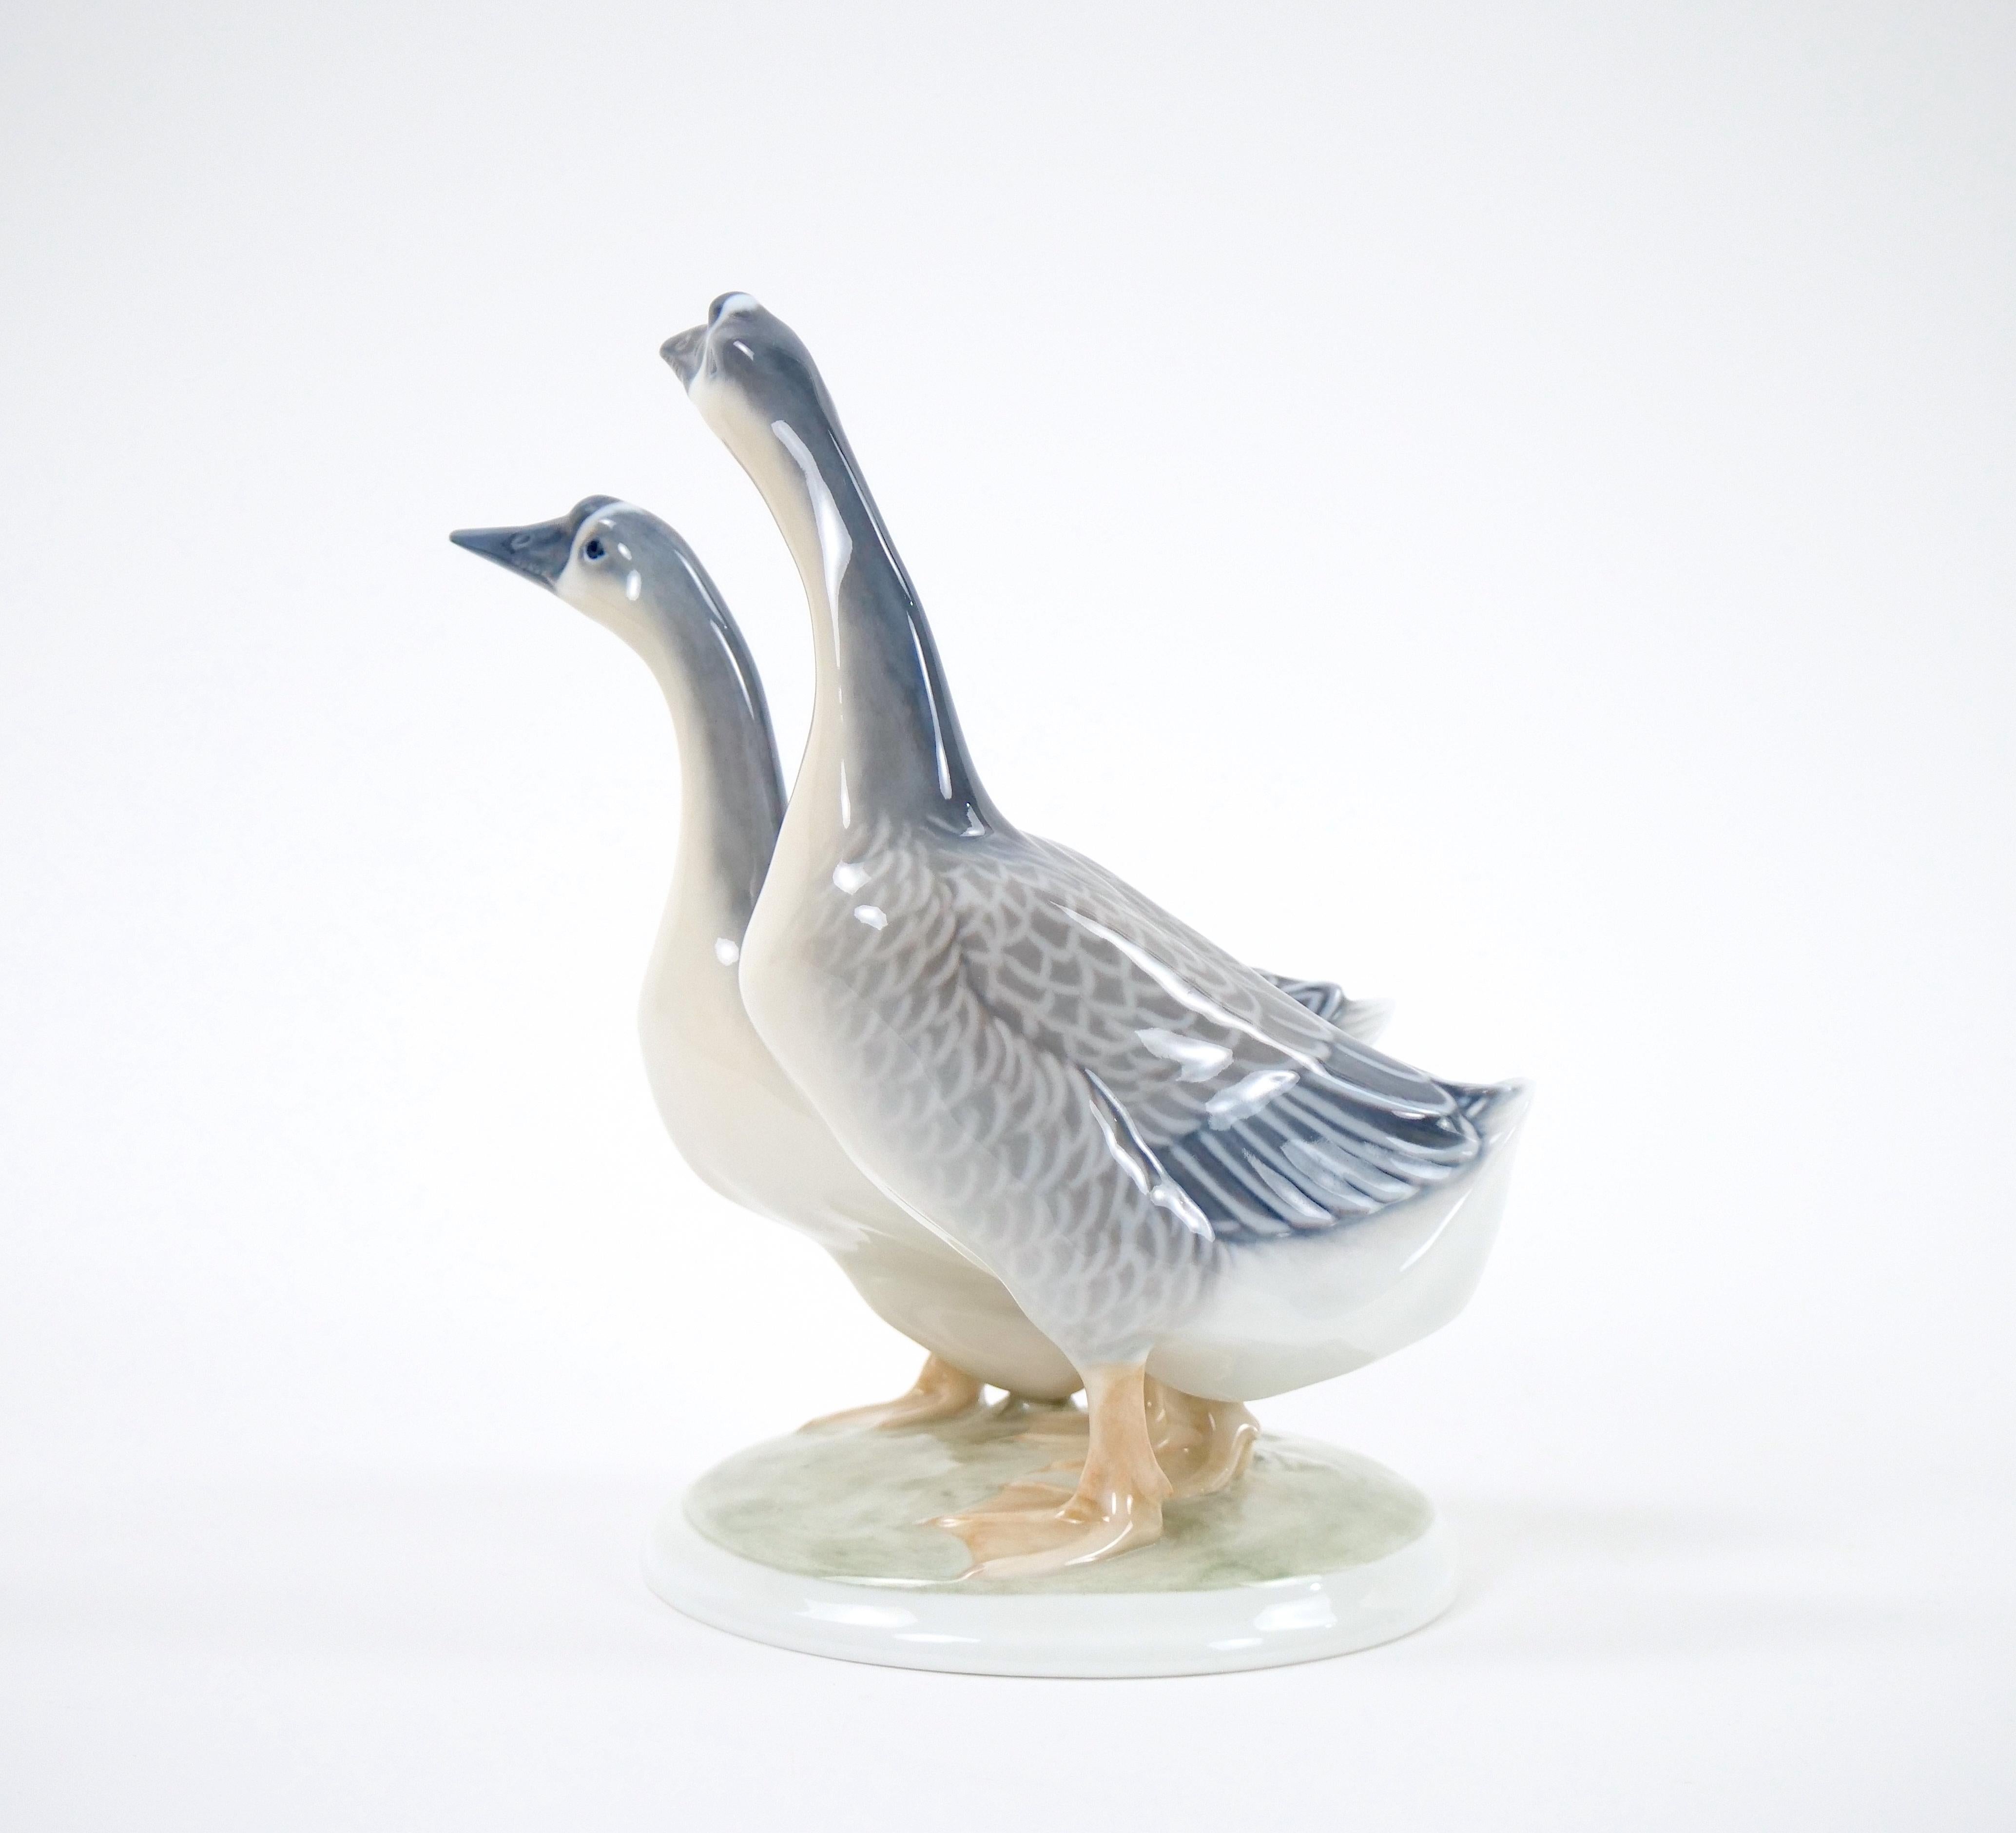 Danish Glazed Porcelain Royal Copenhagen Decorative Pair Duck Decorative Sculpture For Sale